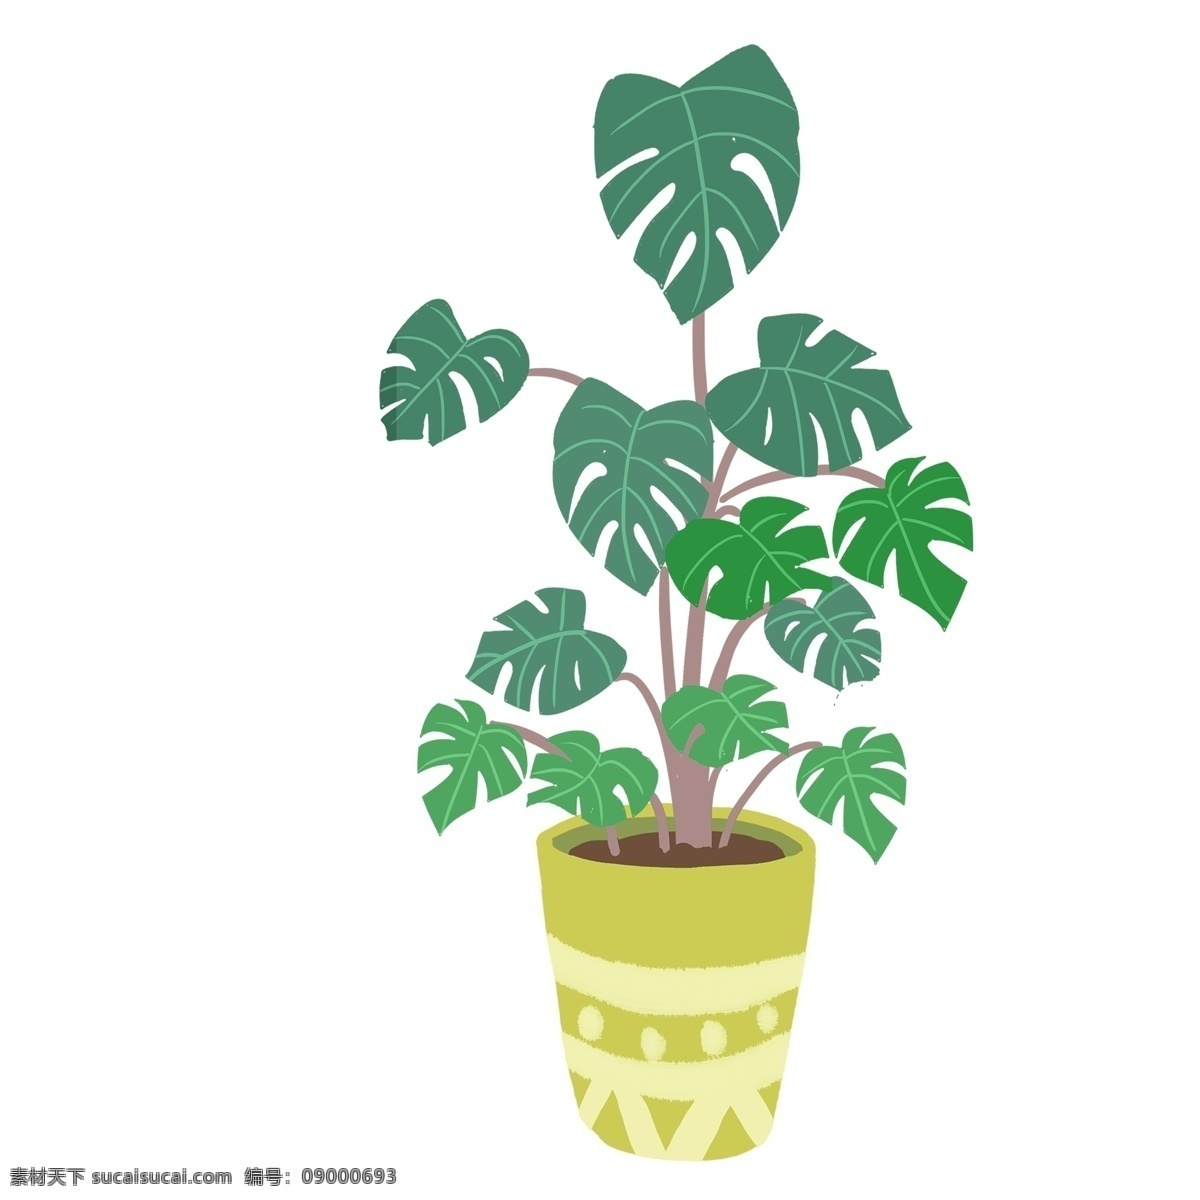 绿色 盆栽 植物 花盆 卡通 彩色 小清新 创意 手绘 绘画元素 现代 简约 装饰 图案